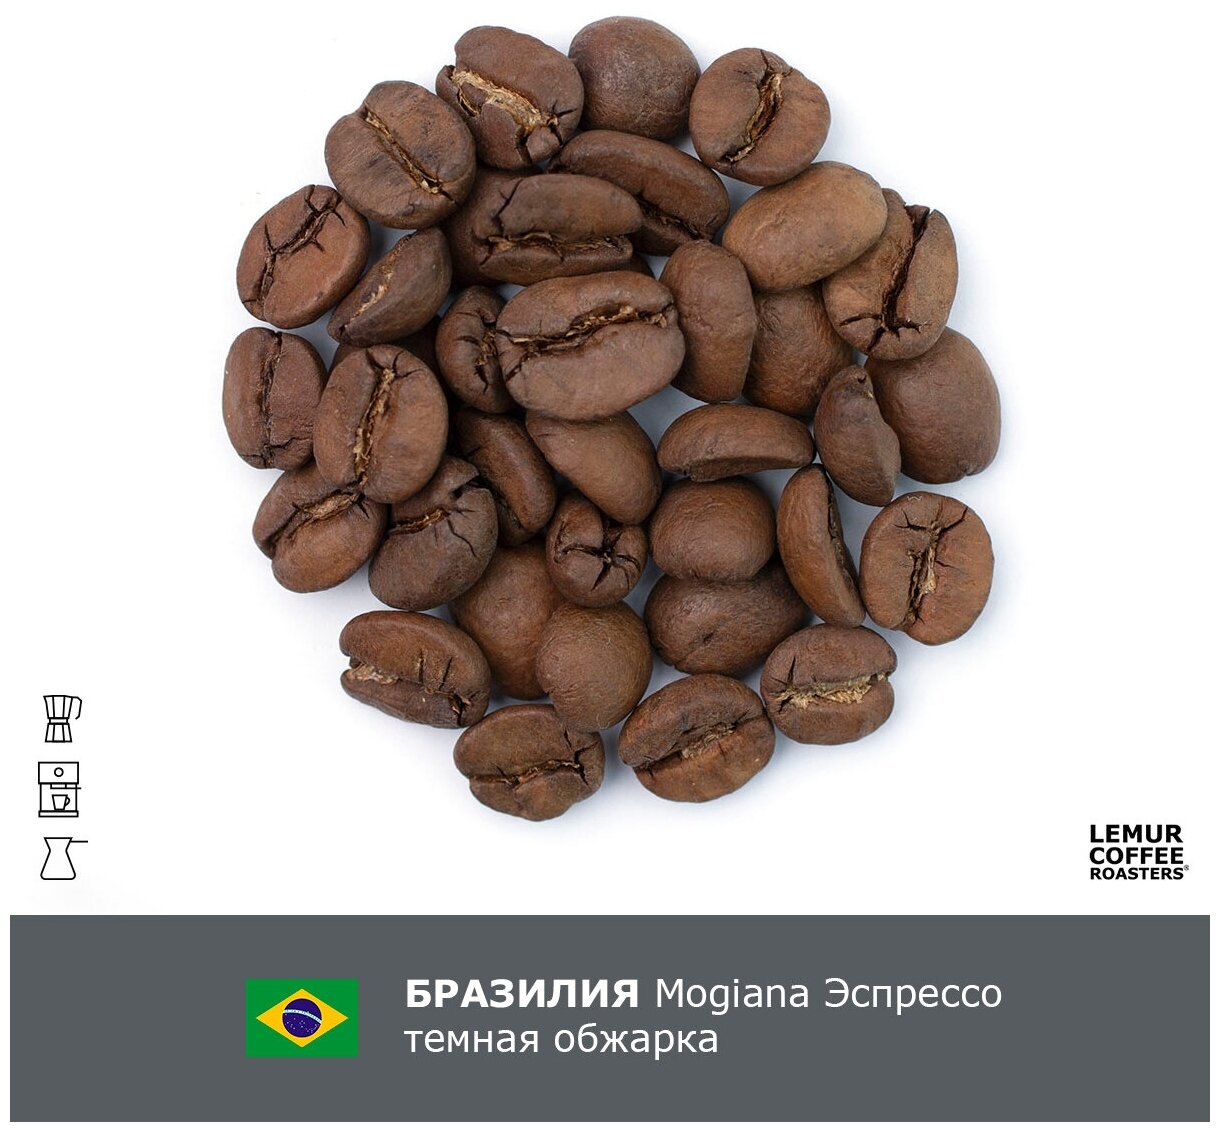 Свежеобжаренный кофе в зернах Бразилия Mogiana Эспрессо Темная обжарка Lemur Coffee Roasters, 1кг - фотография № 2